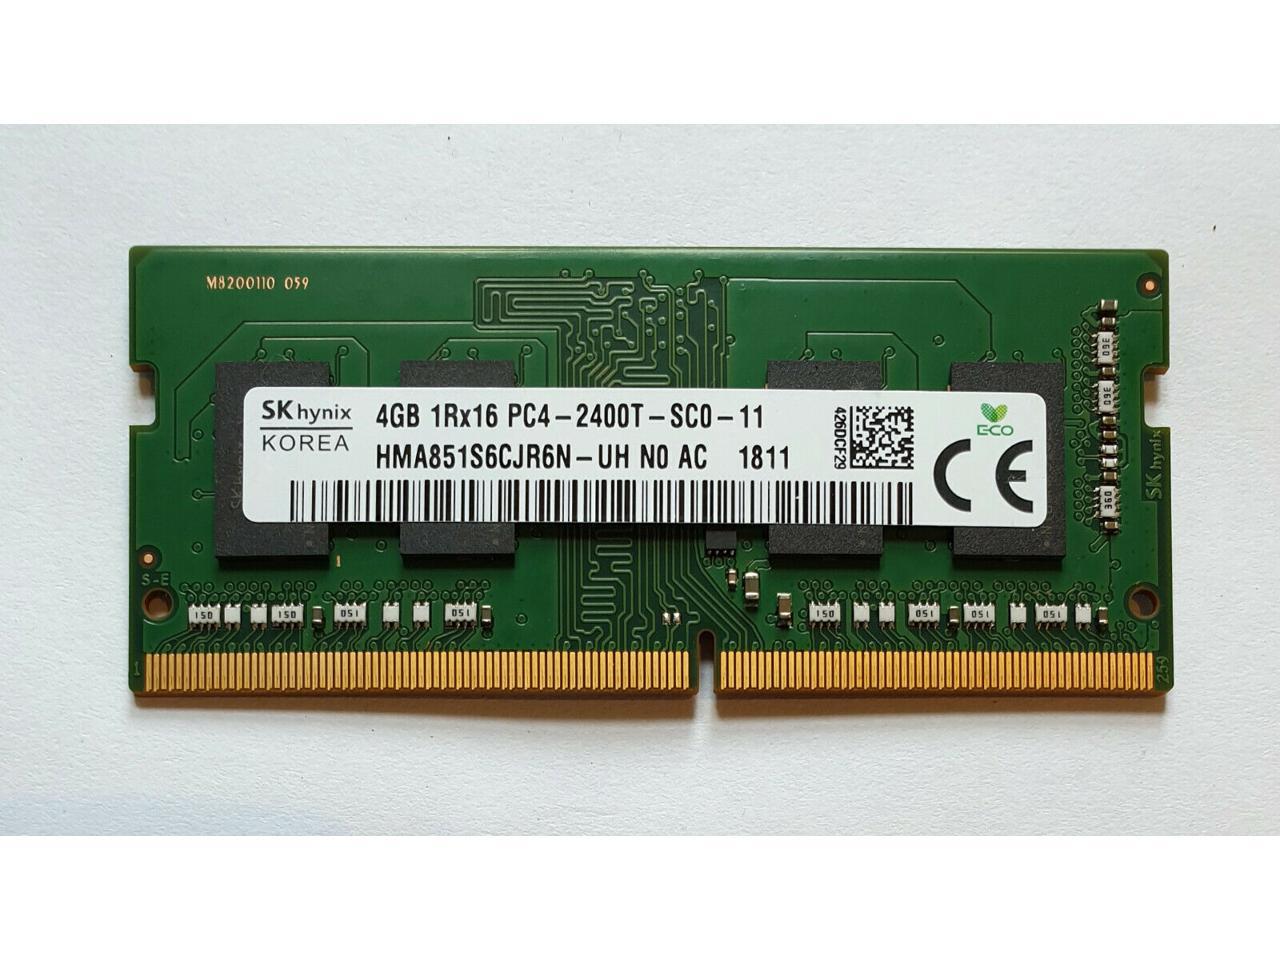 SK Hynix HMA851S6CJR6N-UH 4GB DDR4 2400MHz PC4-19200 DDR4-2400T SODIMM